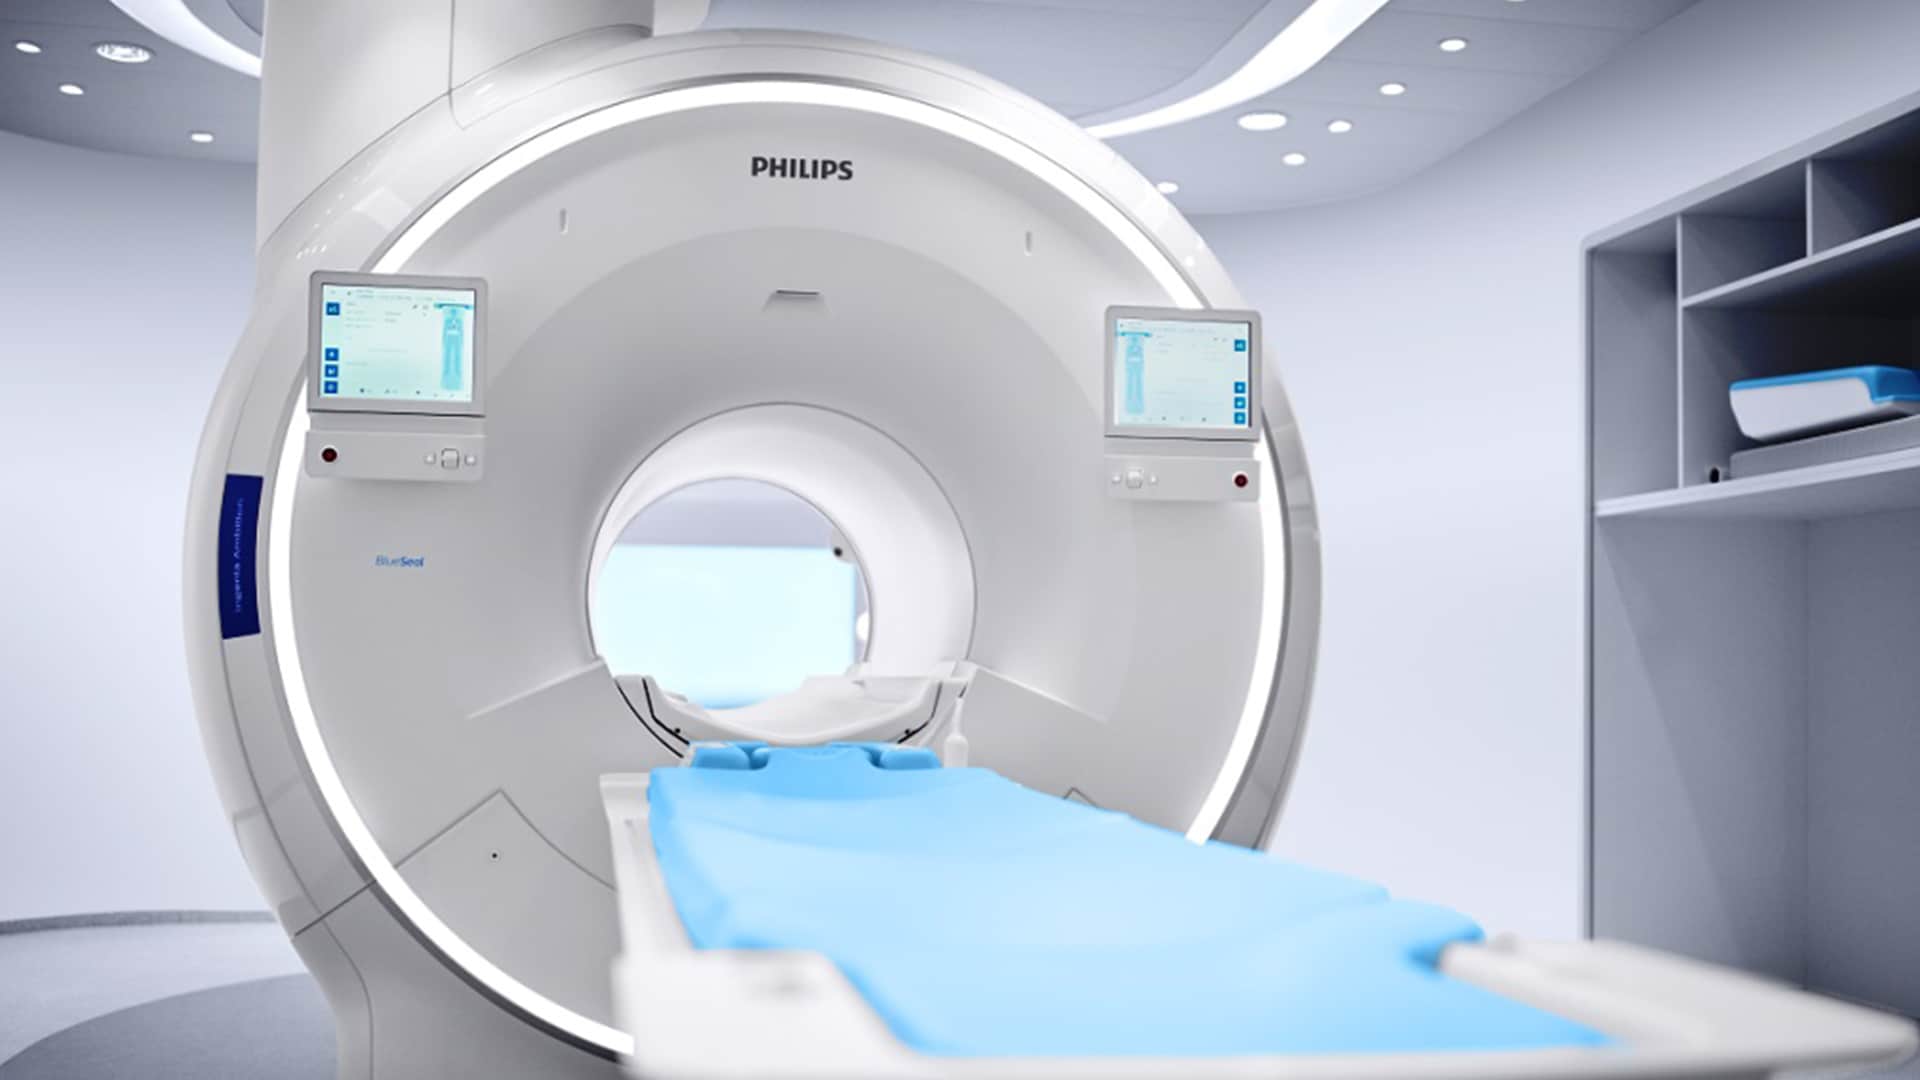 Philips lansează Incisive CT, primul echipament de imagistică medicală însoțit de garanție pe întreaga durată de viață a sistemului